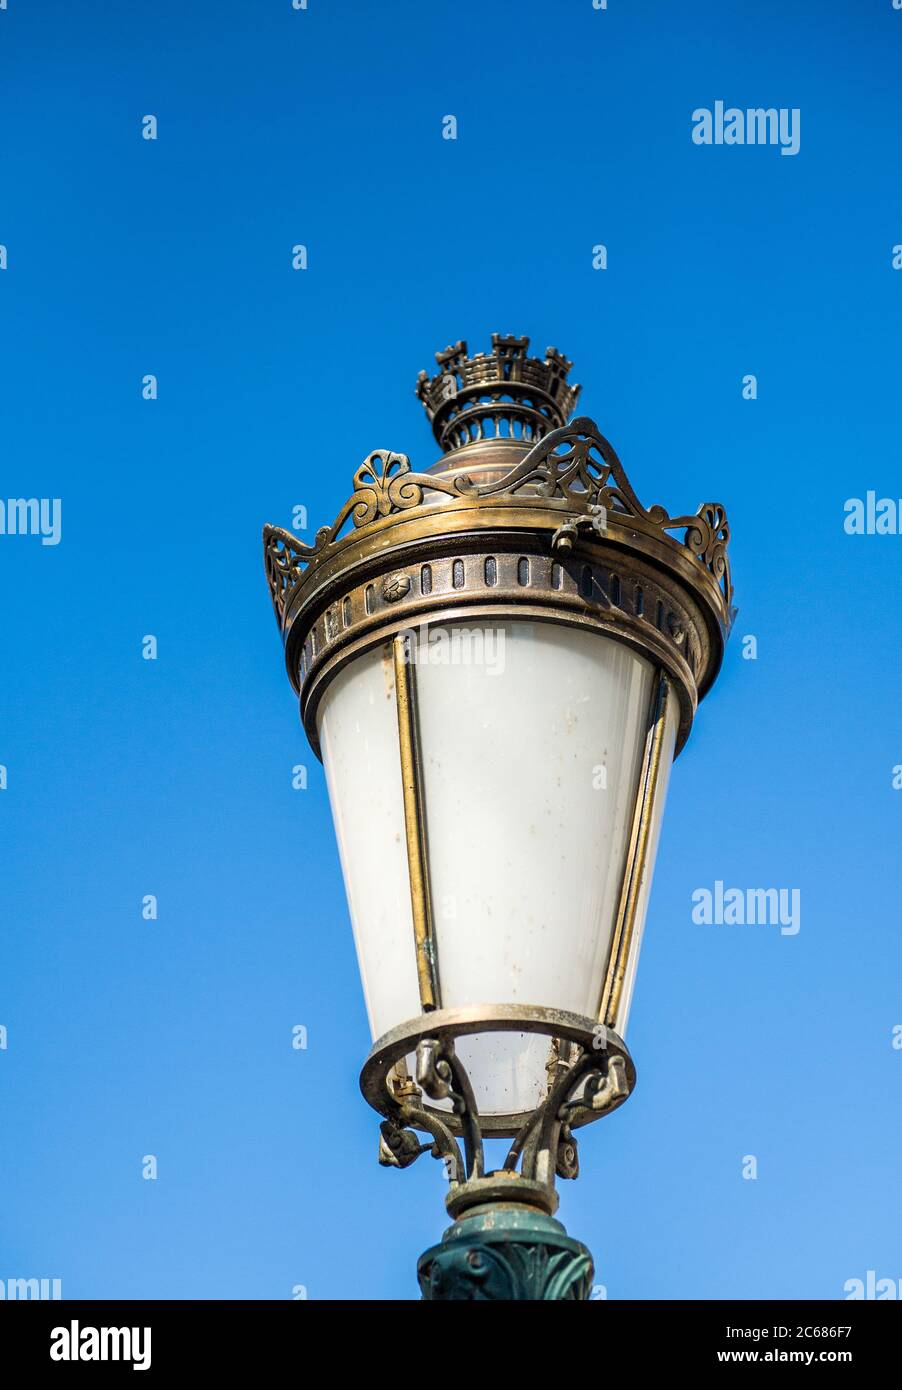 Lamposte de rue vintage avec ciel bleu clair dans le mérou - laiton magnifique détail fait main dans la ville française Banque D'Images